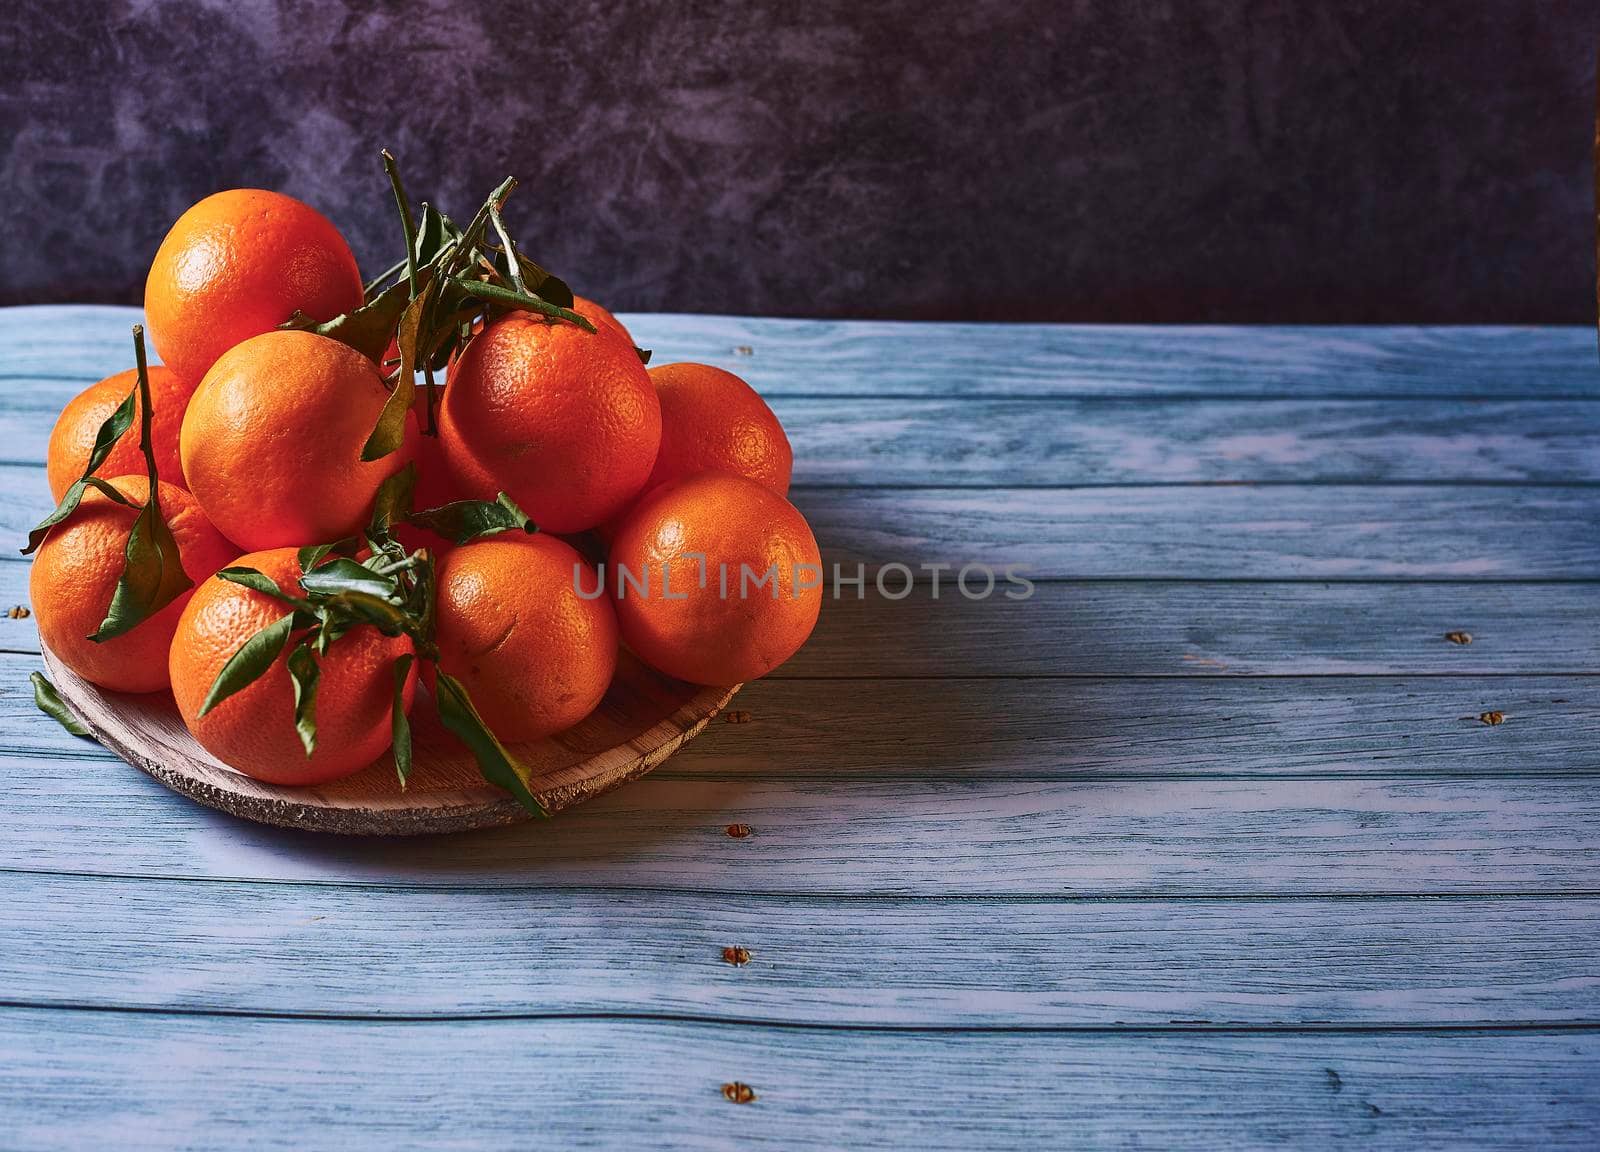 Plate full of various oranges by raul_ruiz